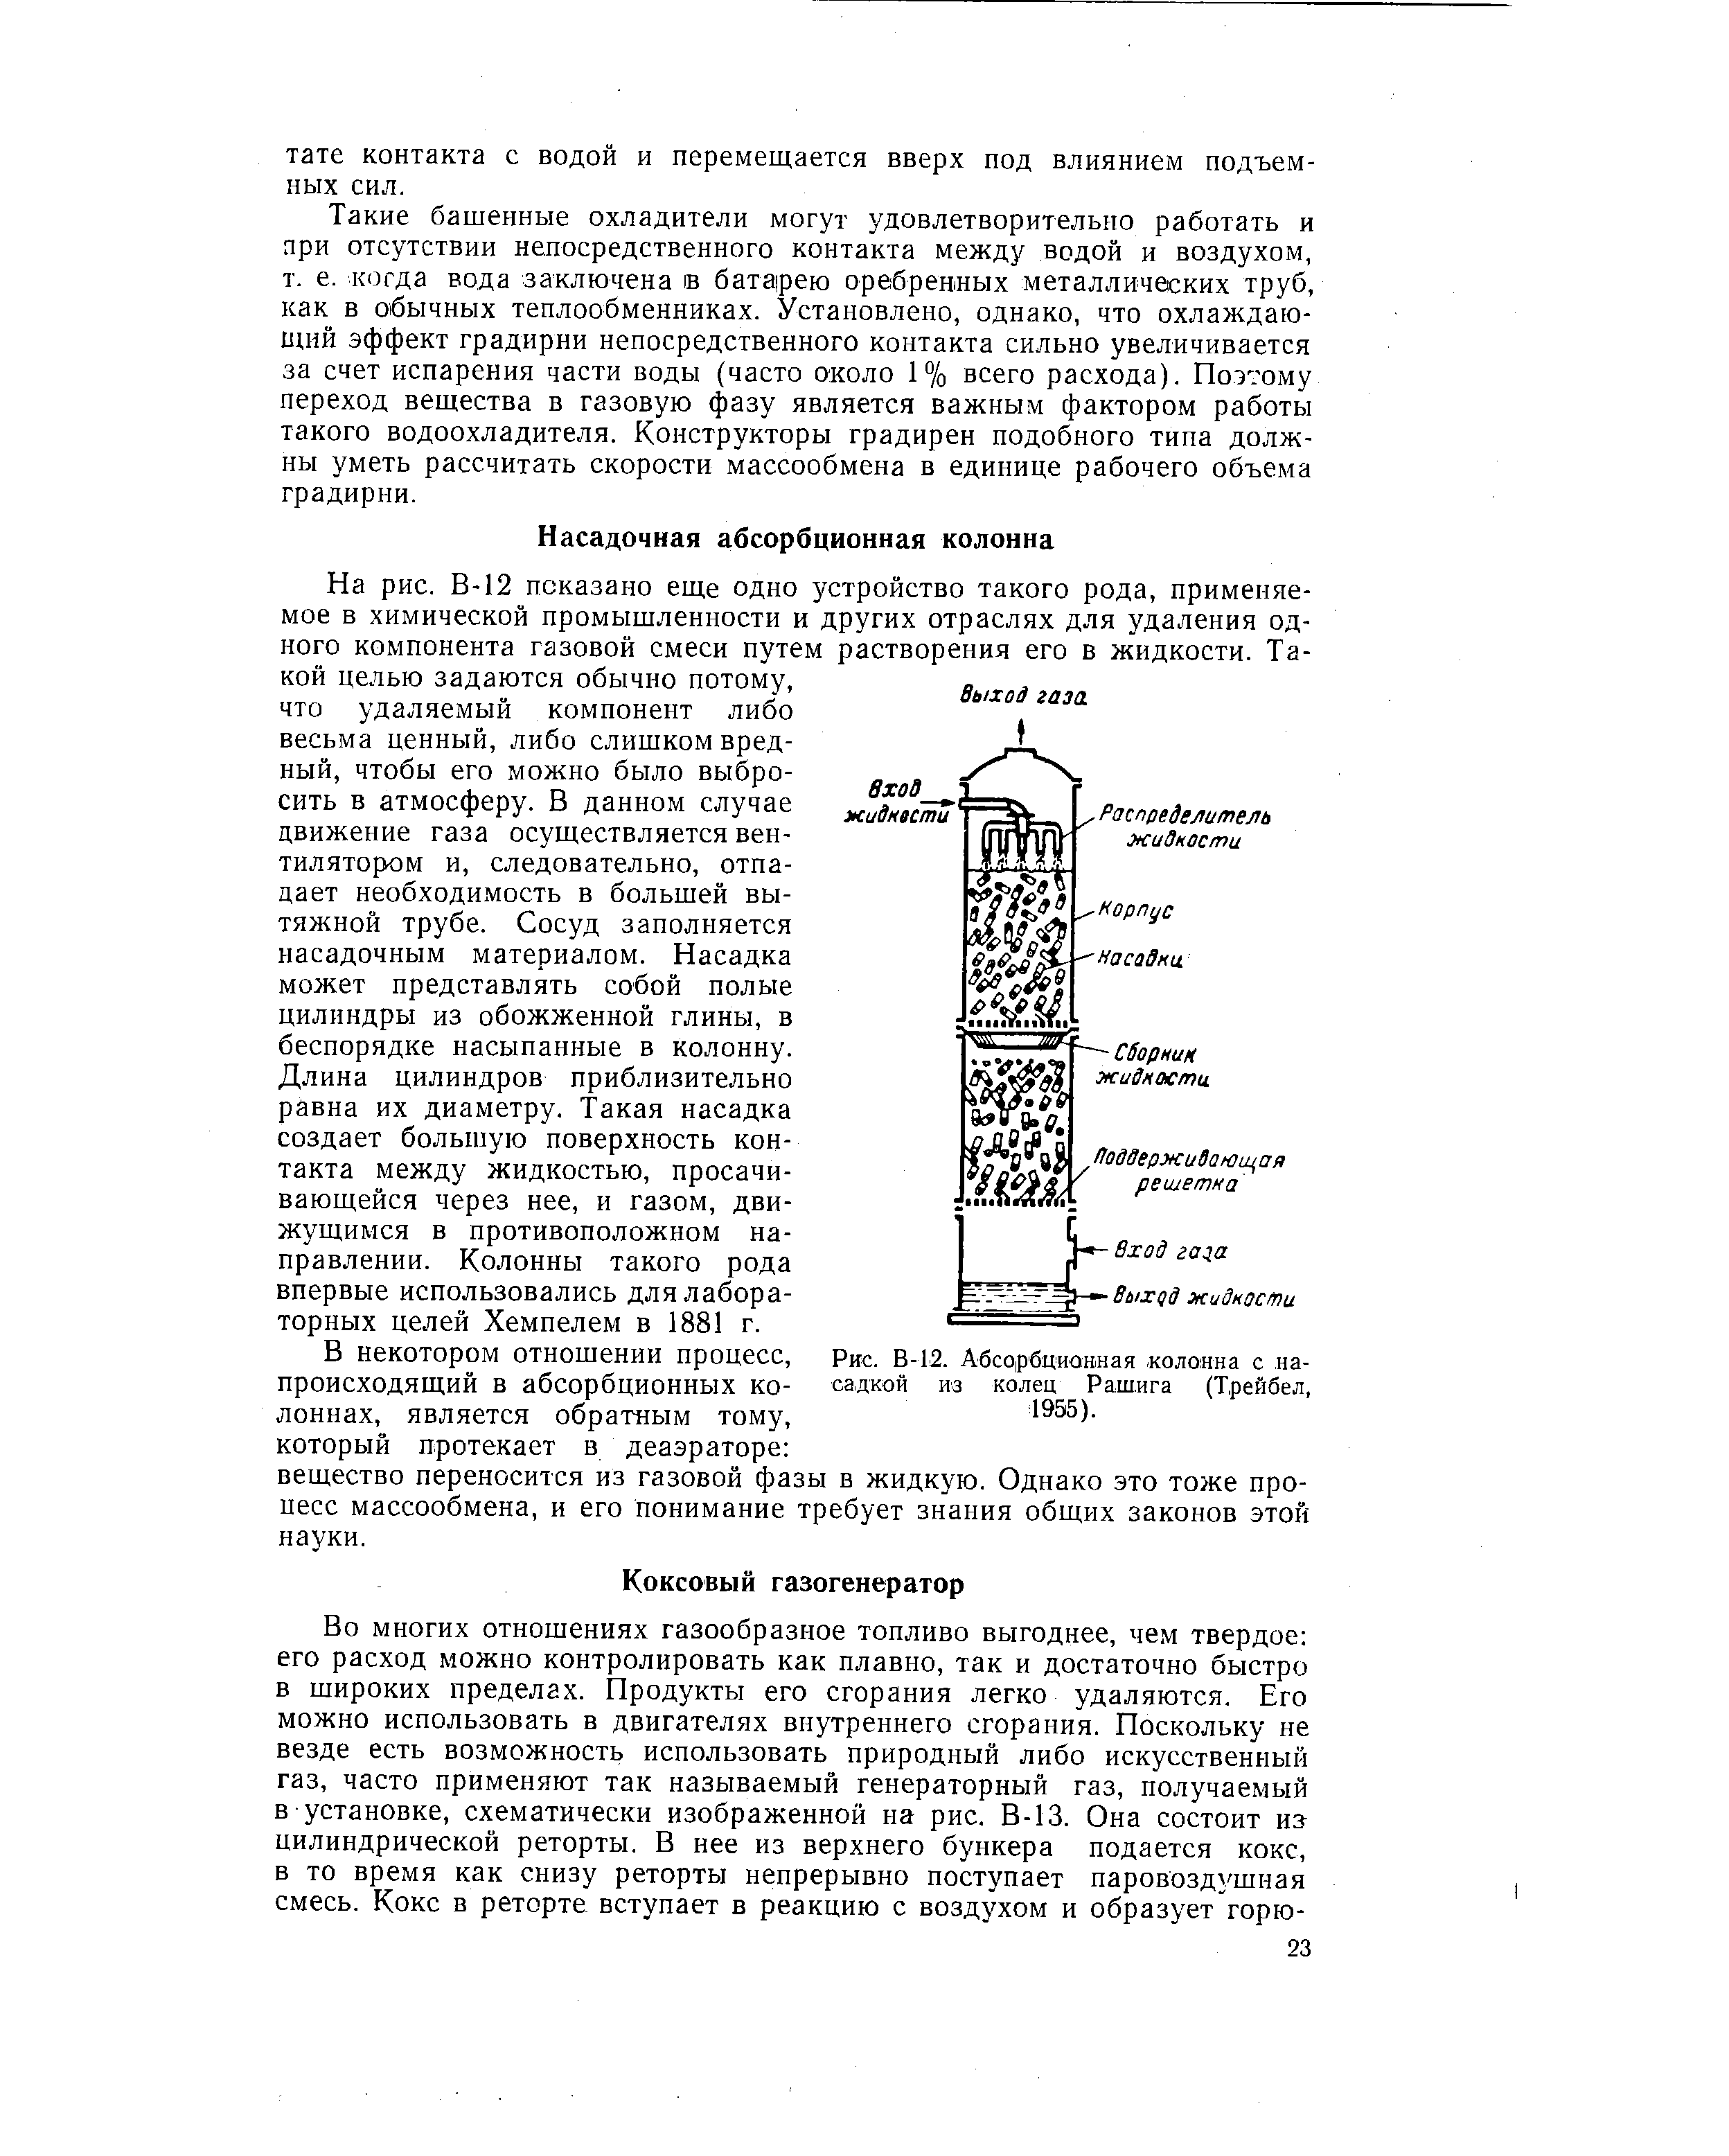 Рис. В-12. Абсорбционная колонна с насадкой из колец Рашига (Трейбел, 1955).
